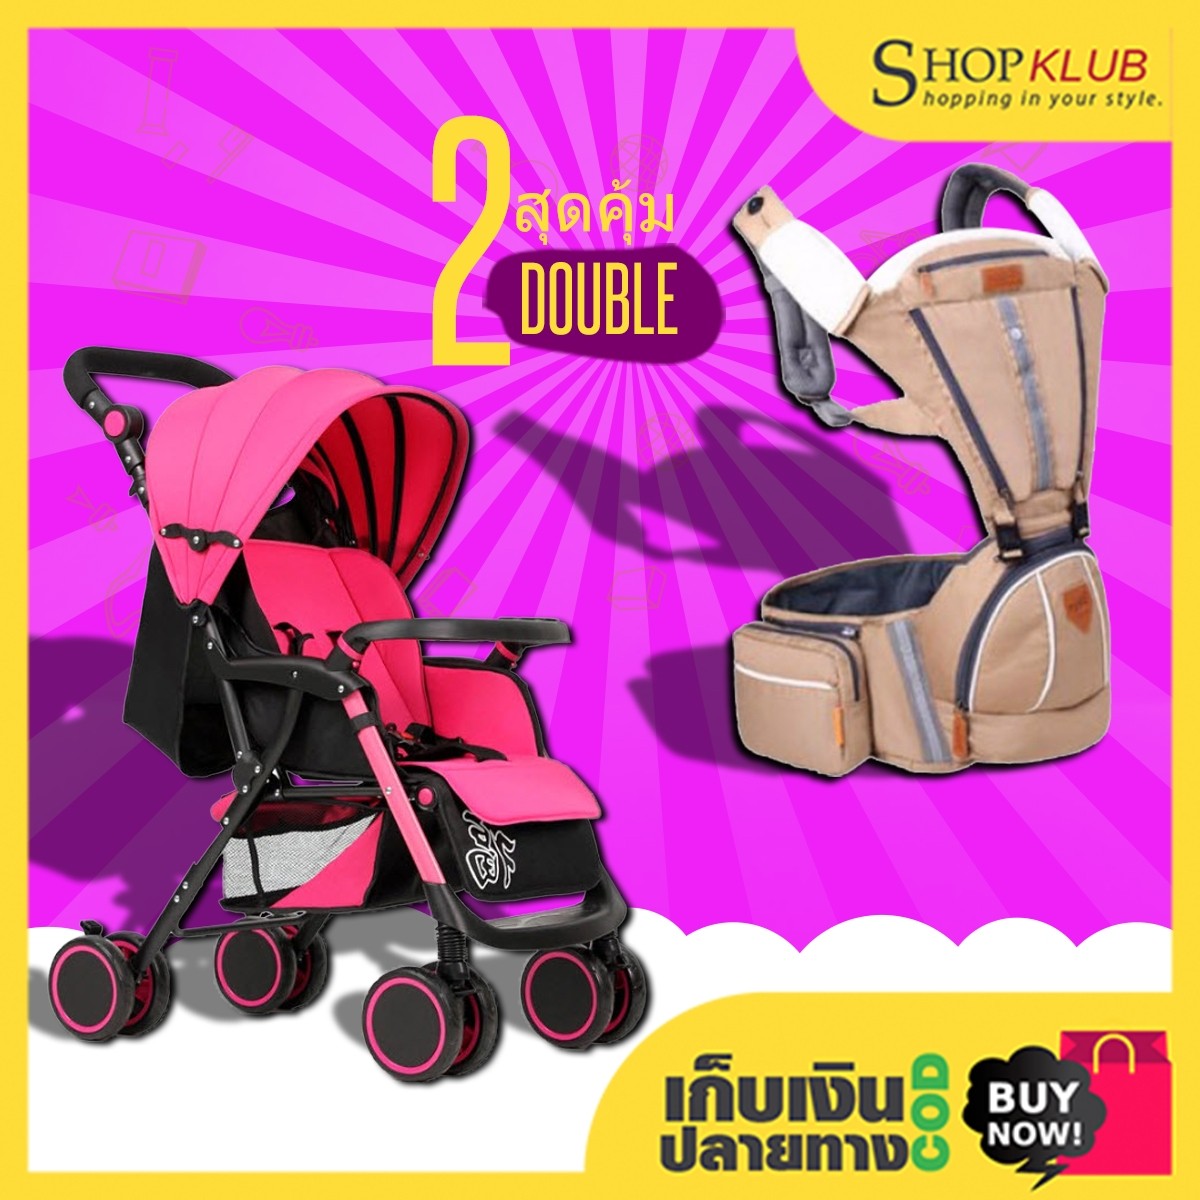 แพ็คคู่ : รถเข็นเด็ก baby stroller A6 + เป้อุ้มเด็ก 3 in 1 B2174